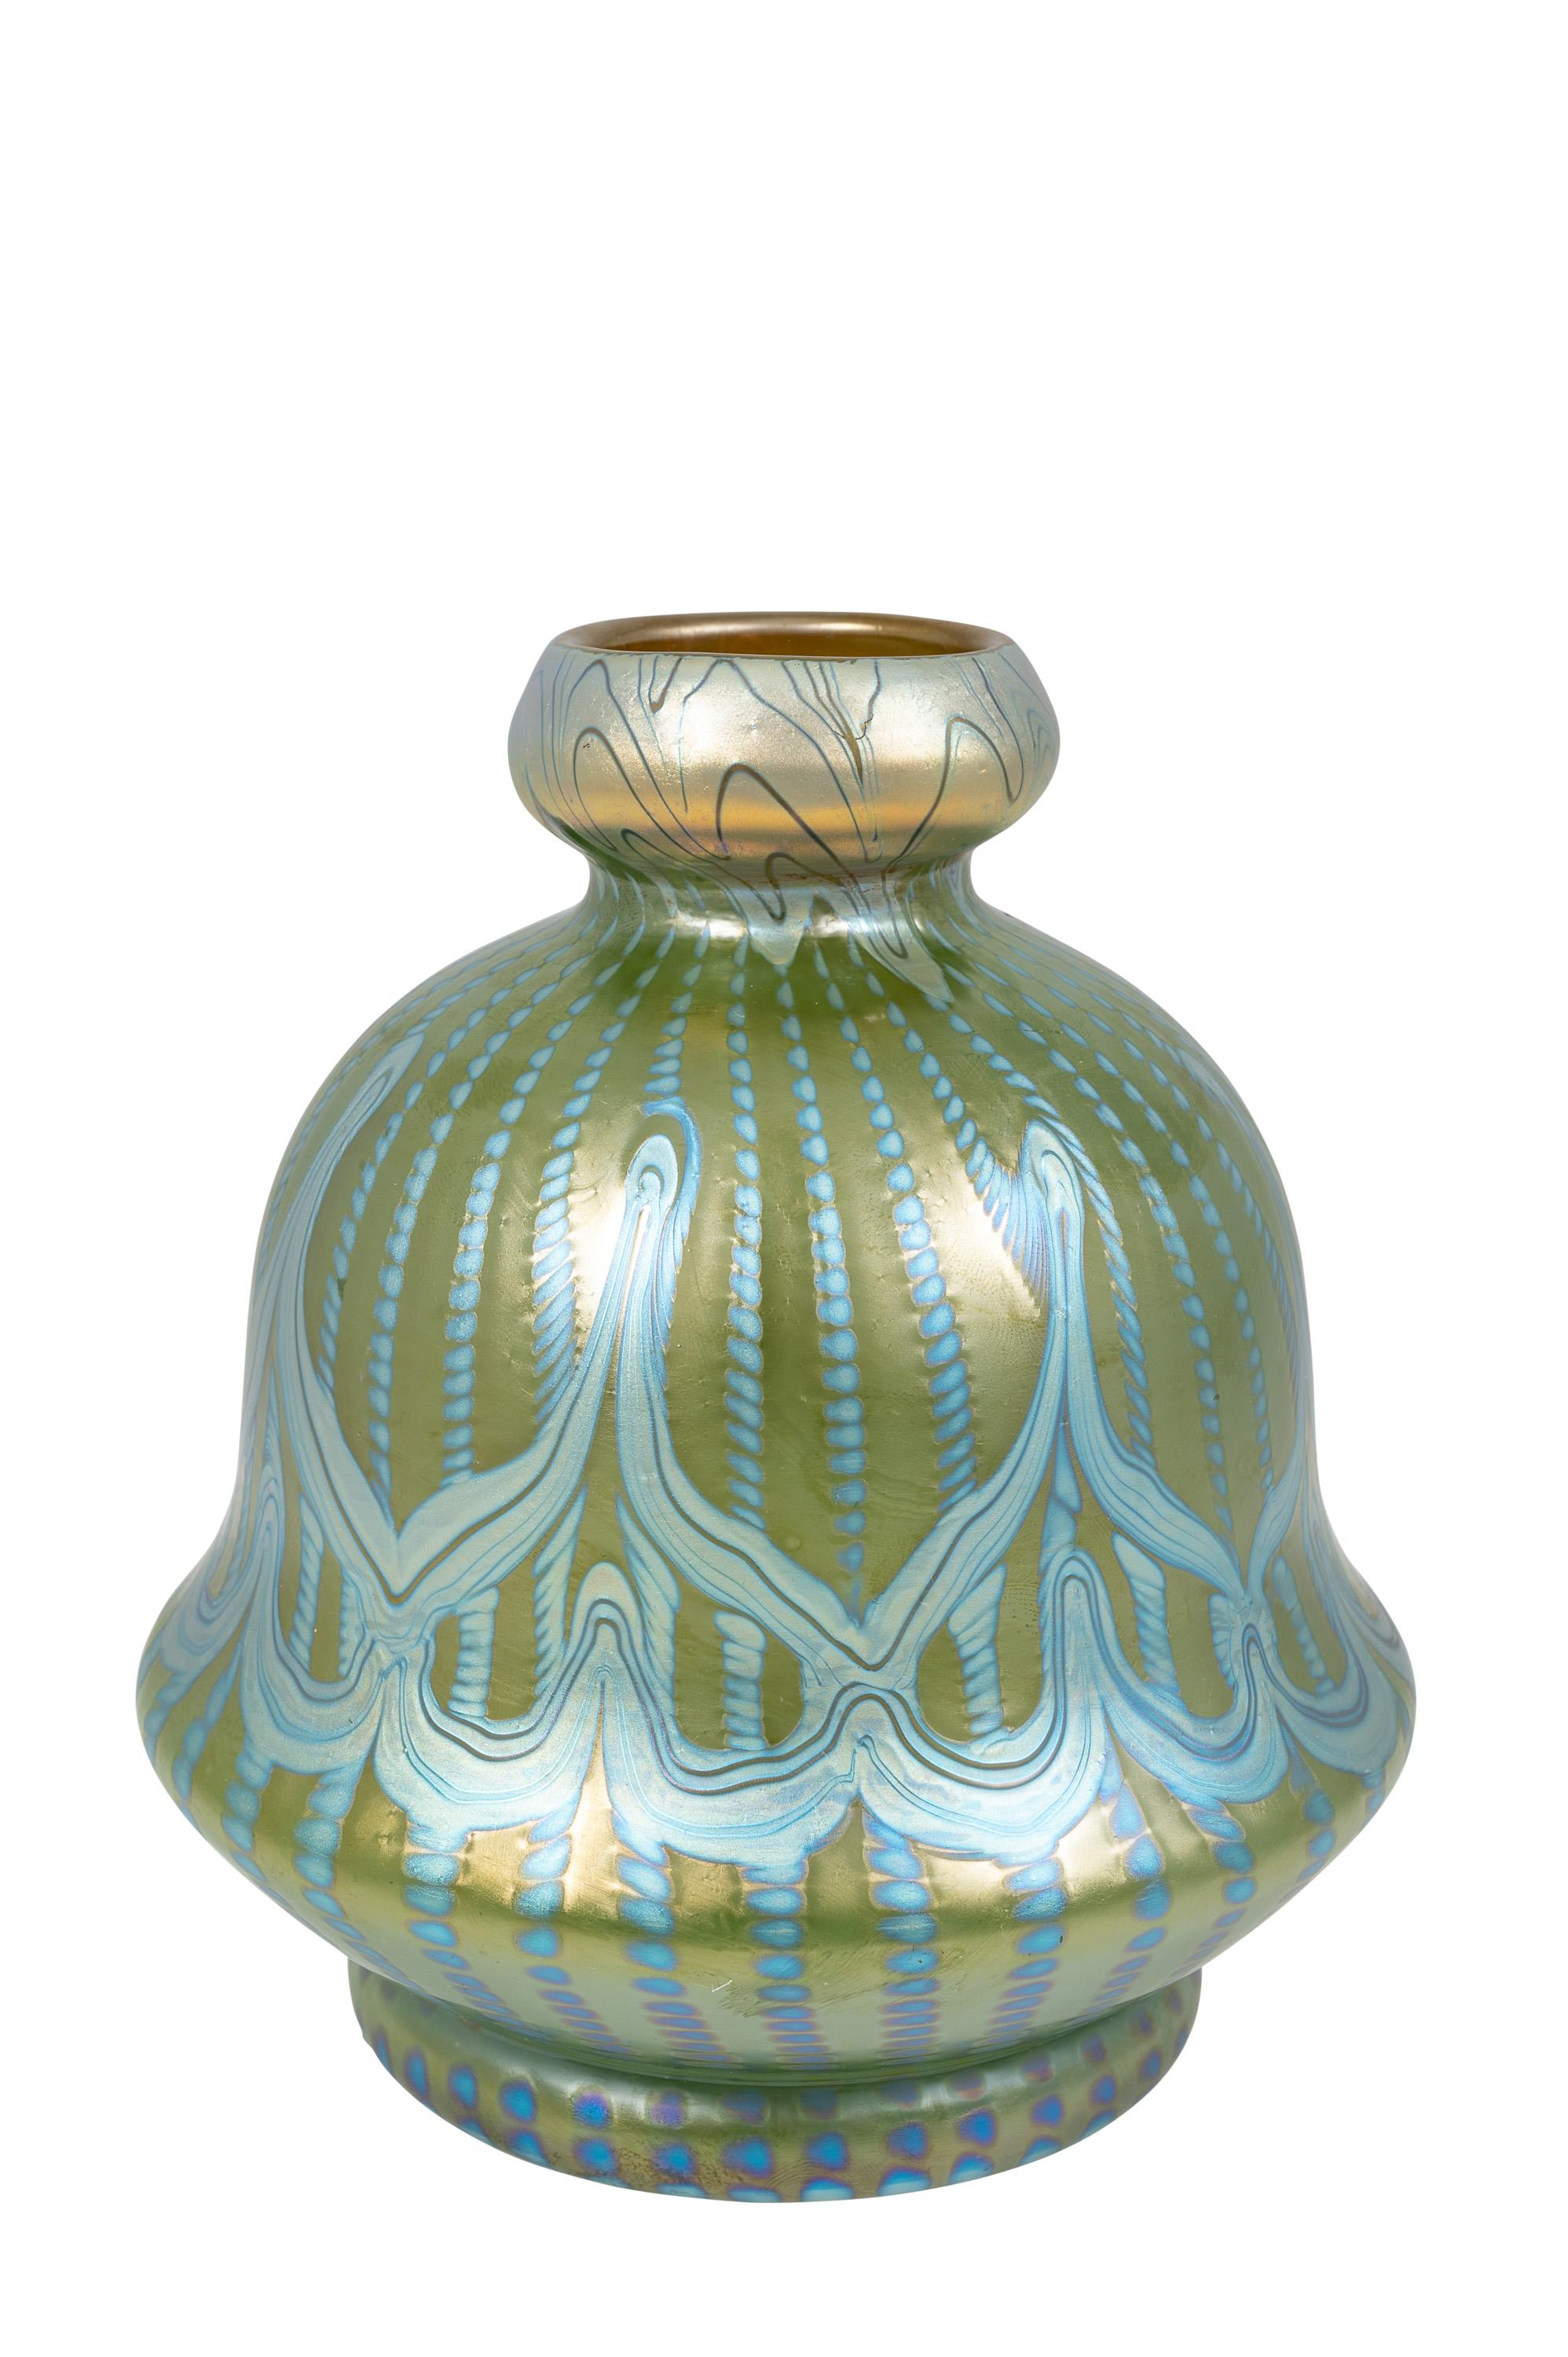 Bohemian Glass Vase Loetz circa 1900 Signed Art Nouveau Jugendstil Blue Green In Good Condition For Sale In Klosterneuburg, AT